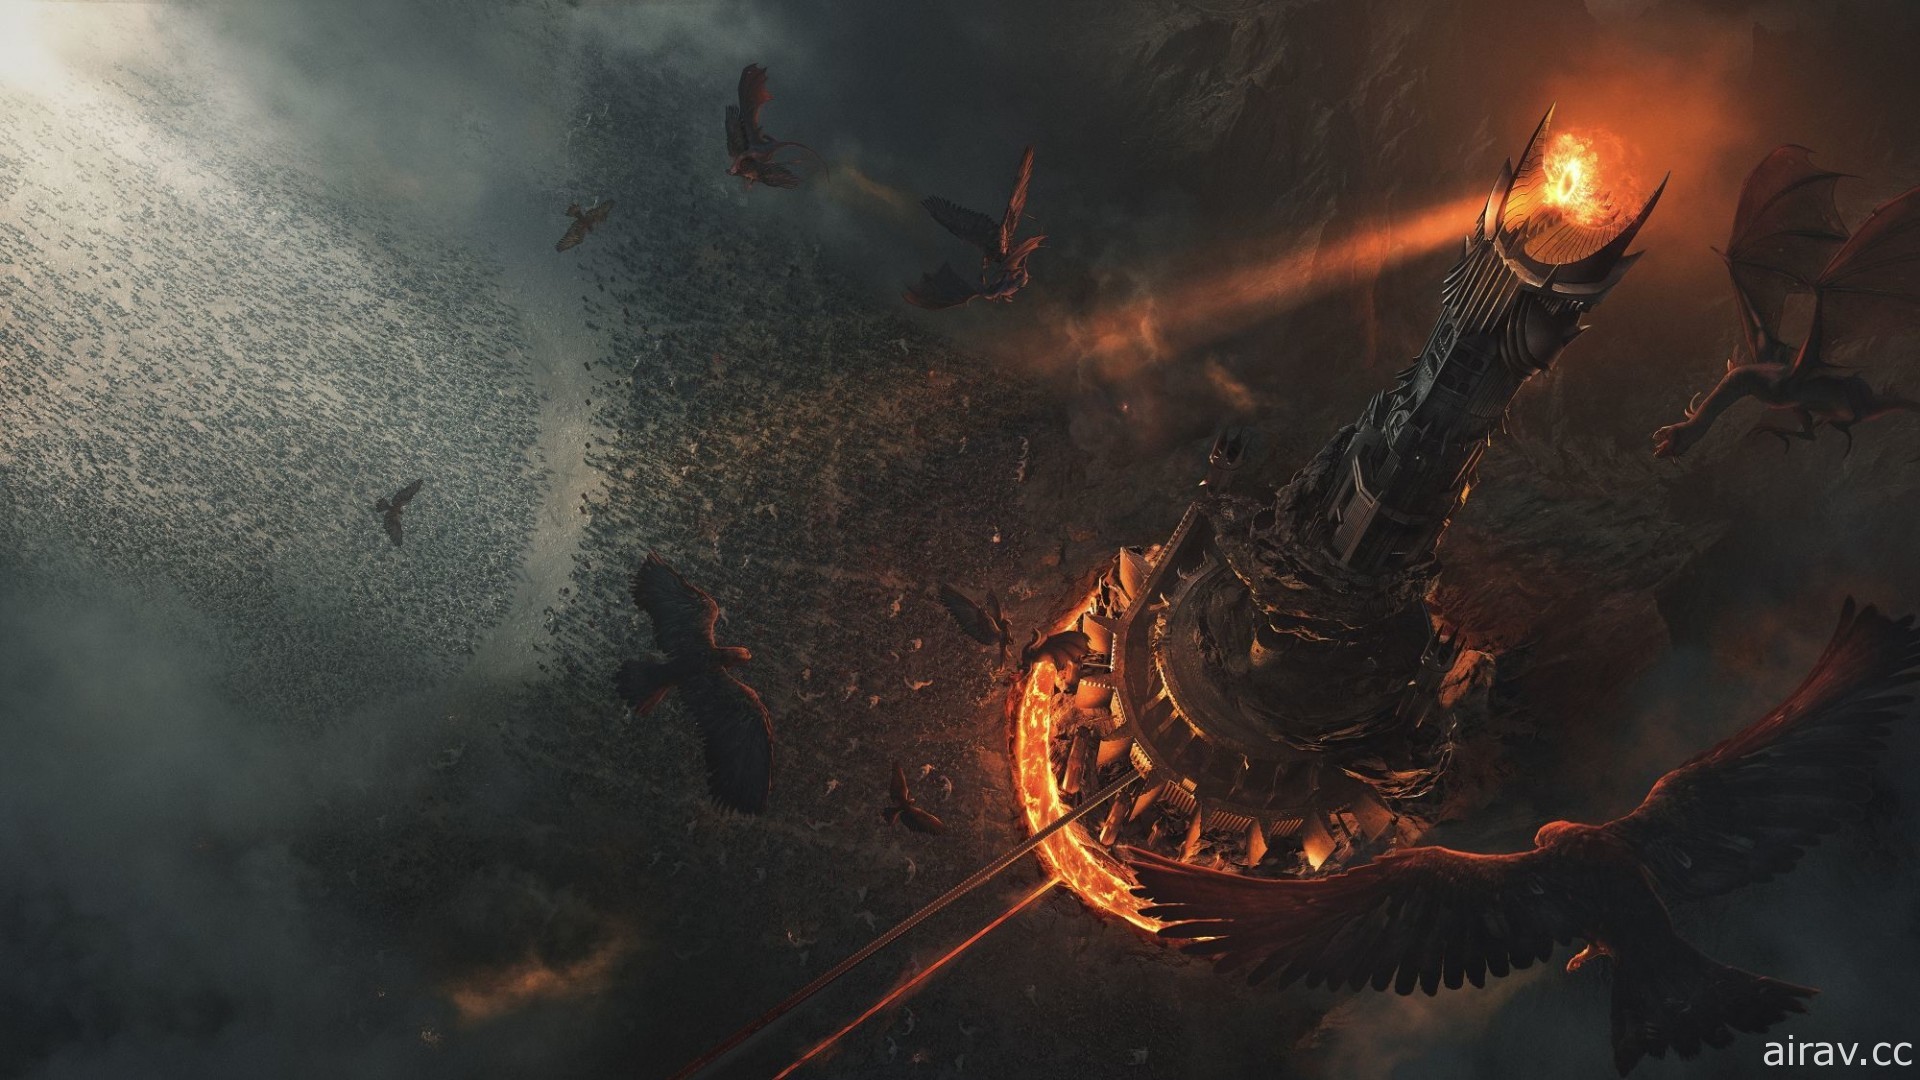 《魔戒三部曲》改編新作《魔戒：開戰時刻》開放雙平台事前登錄 預定 2022 年 4 月推出